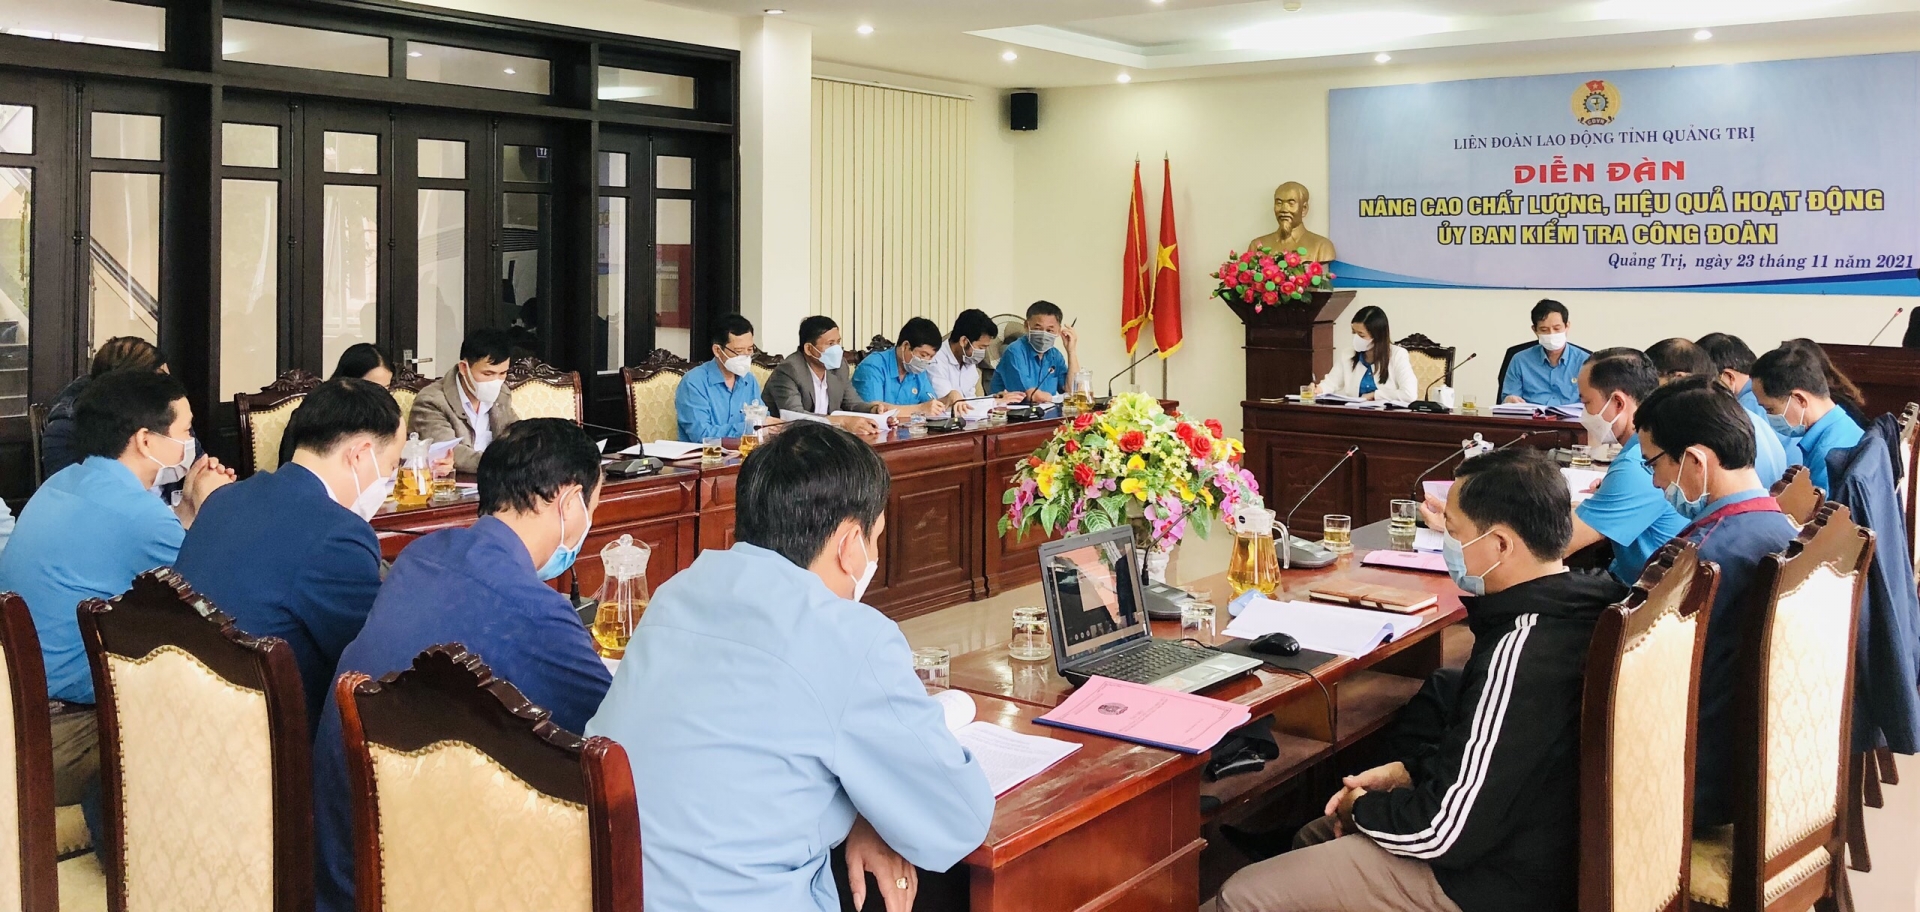 LĐLĐ tỉnh Quảng Trị tổ chức Diễn đàn “Nâng cao chất lượng, hiệu quả hoạt động UBKT"